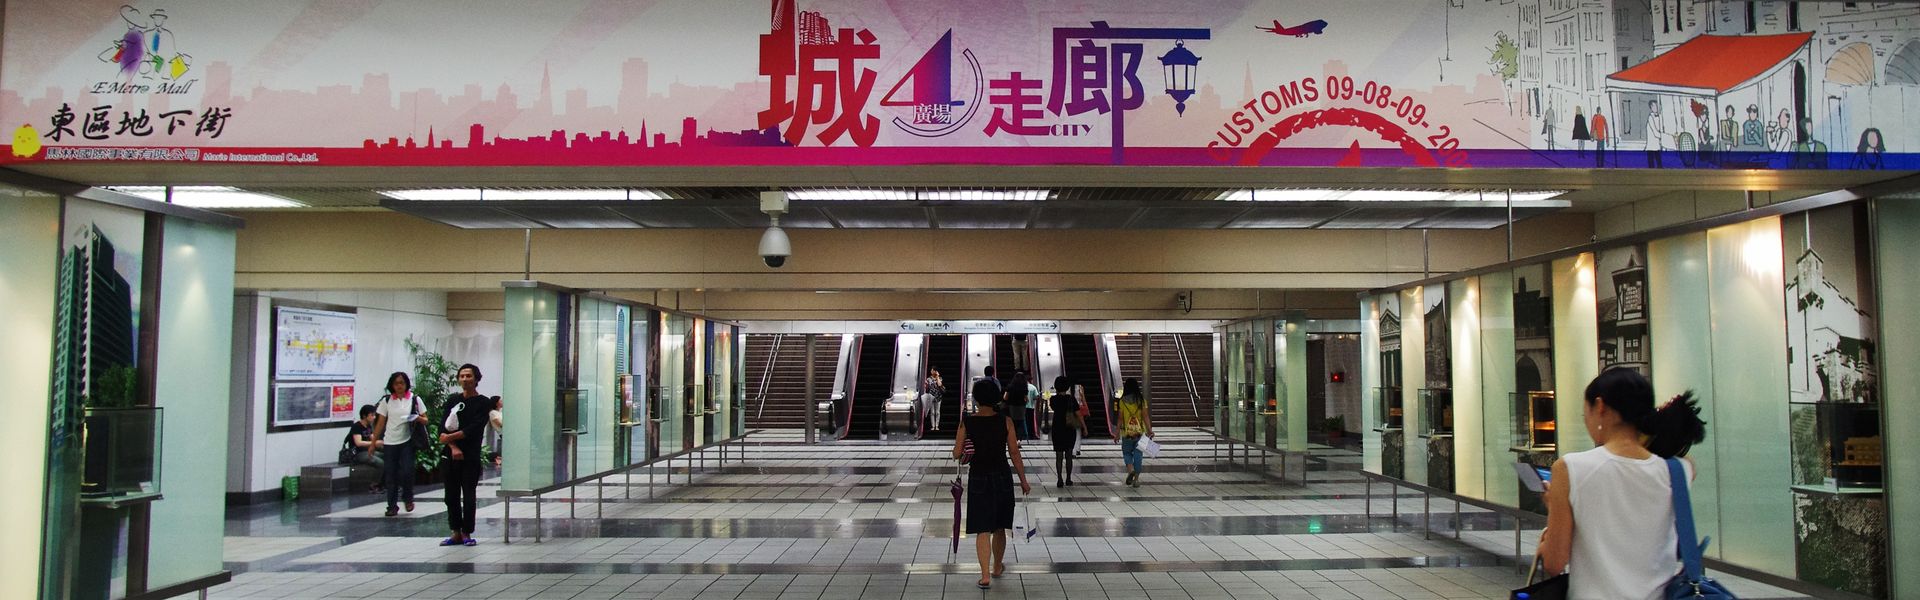 搭捷運來逛「台北東區地下街」風雨無阻逛街去